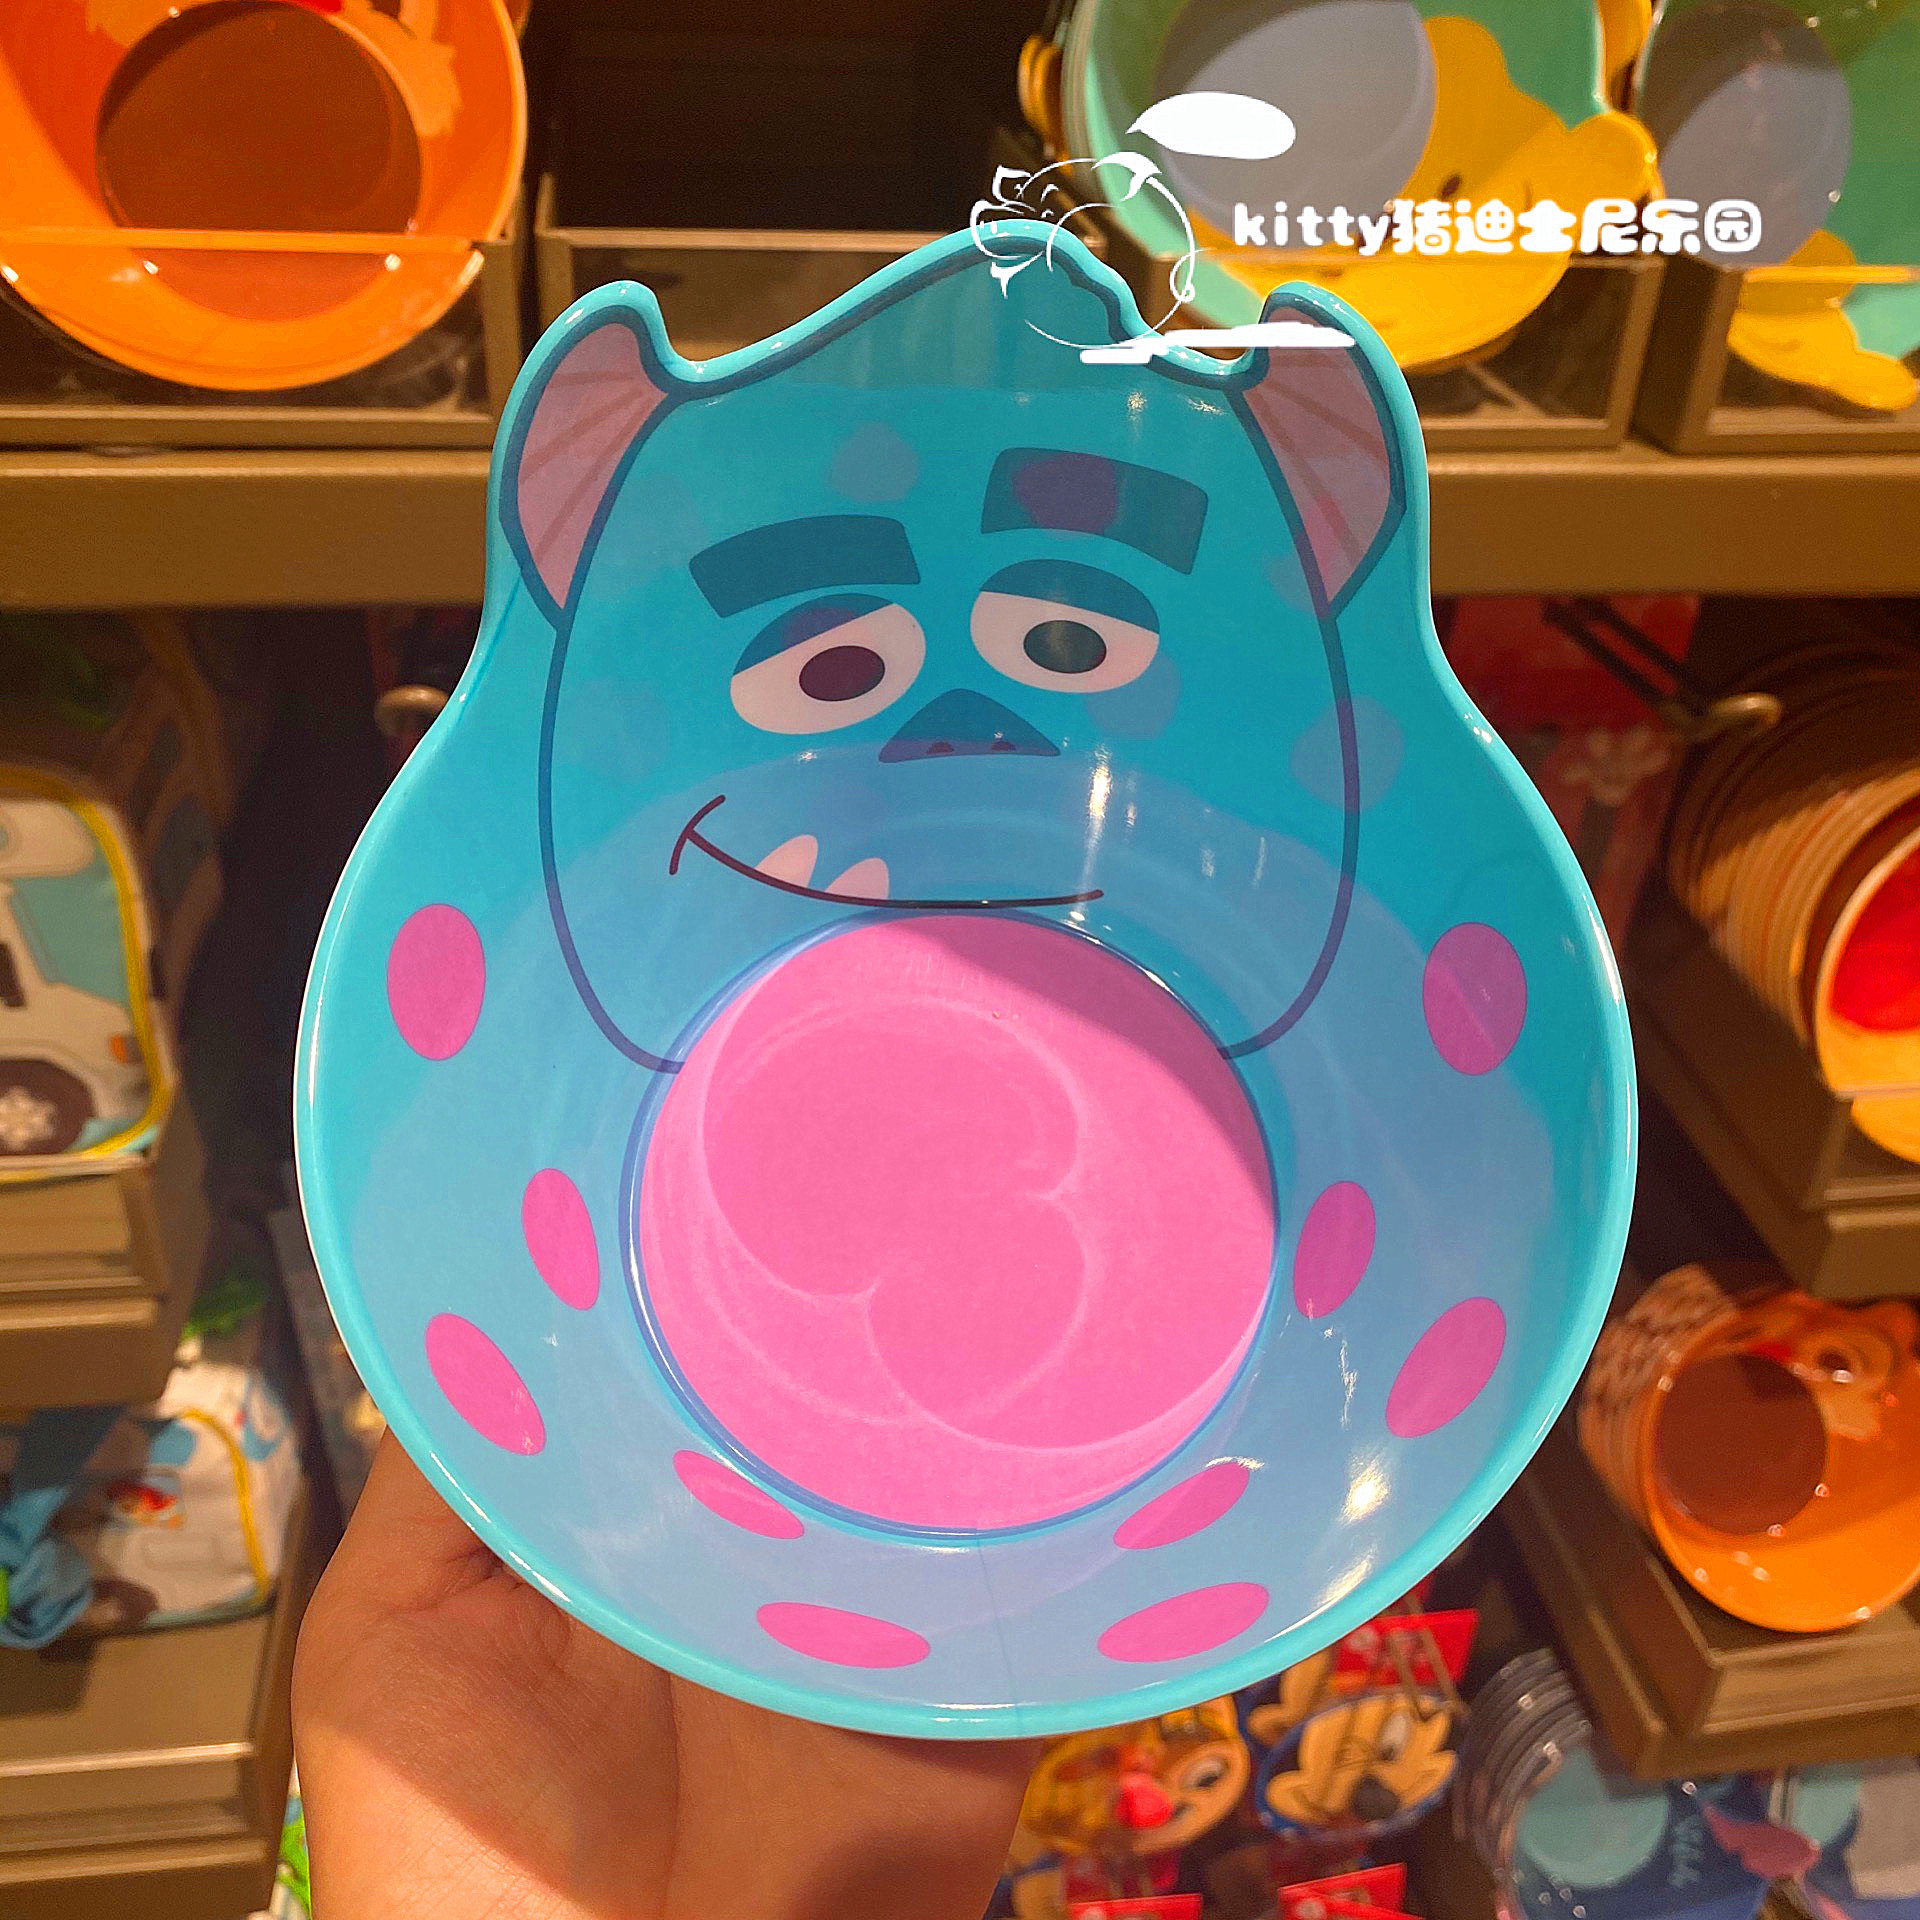 Chén ăn nhựa Melamine hình Sulley Monsters University 3D màu xanh dương cho bé trai - 78VNDM2488X